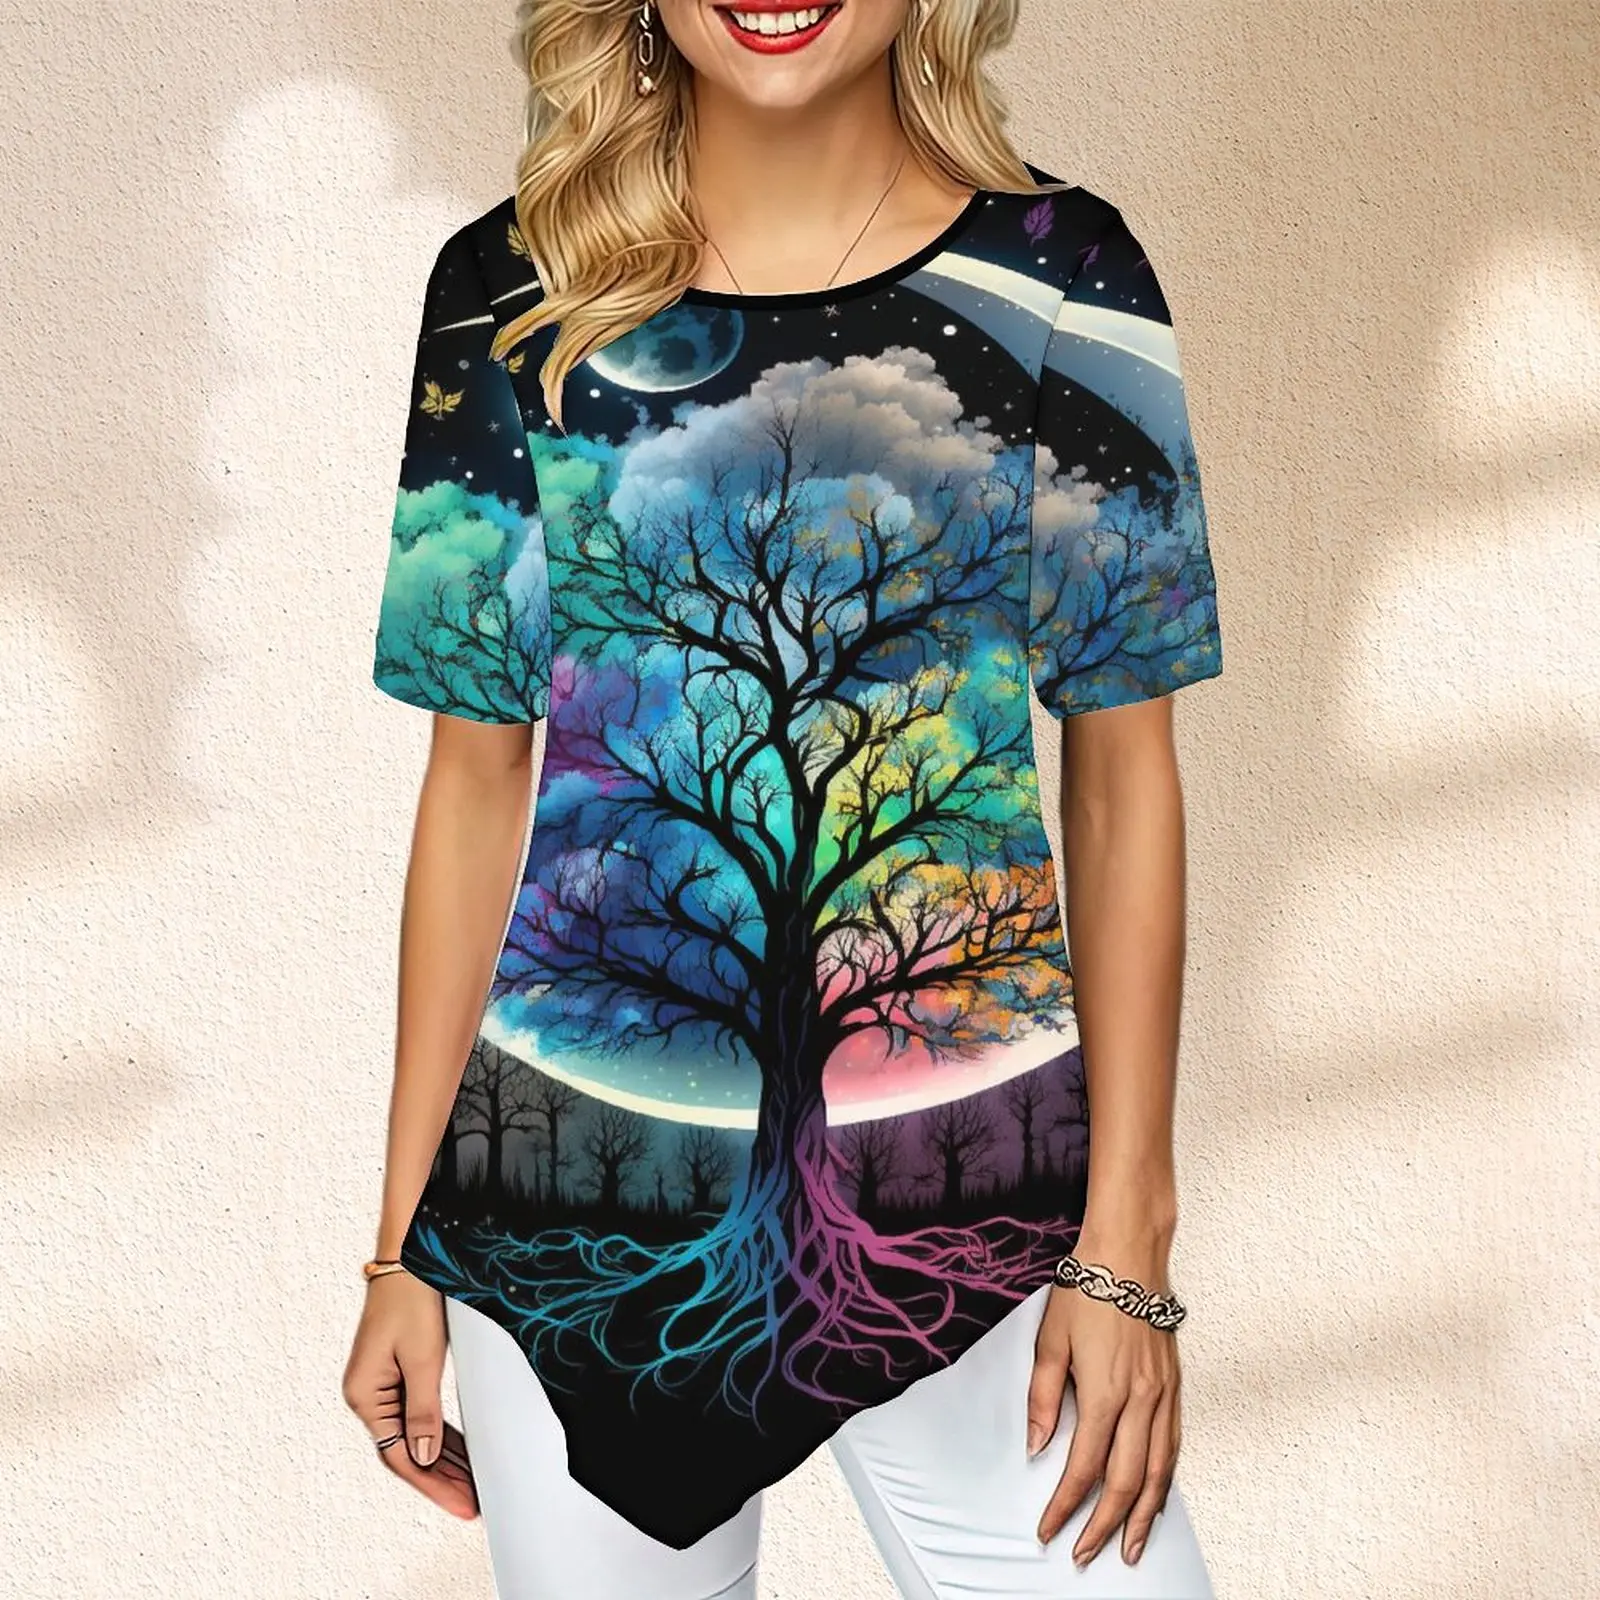 

Летняя женская футболка с принтом дерева жизни и Луны, футболка с коротким рукавом и асимметричным подолом, блузка с графическим принтом